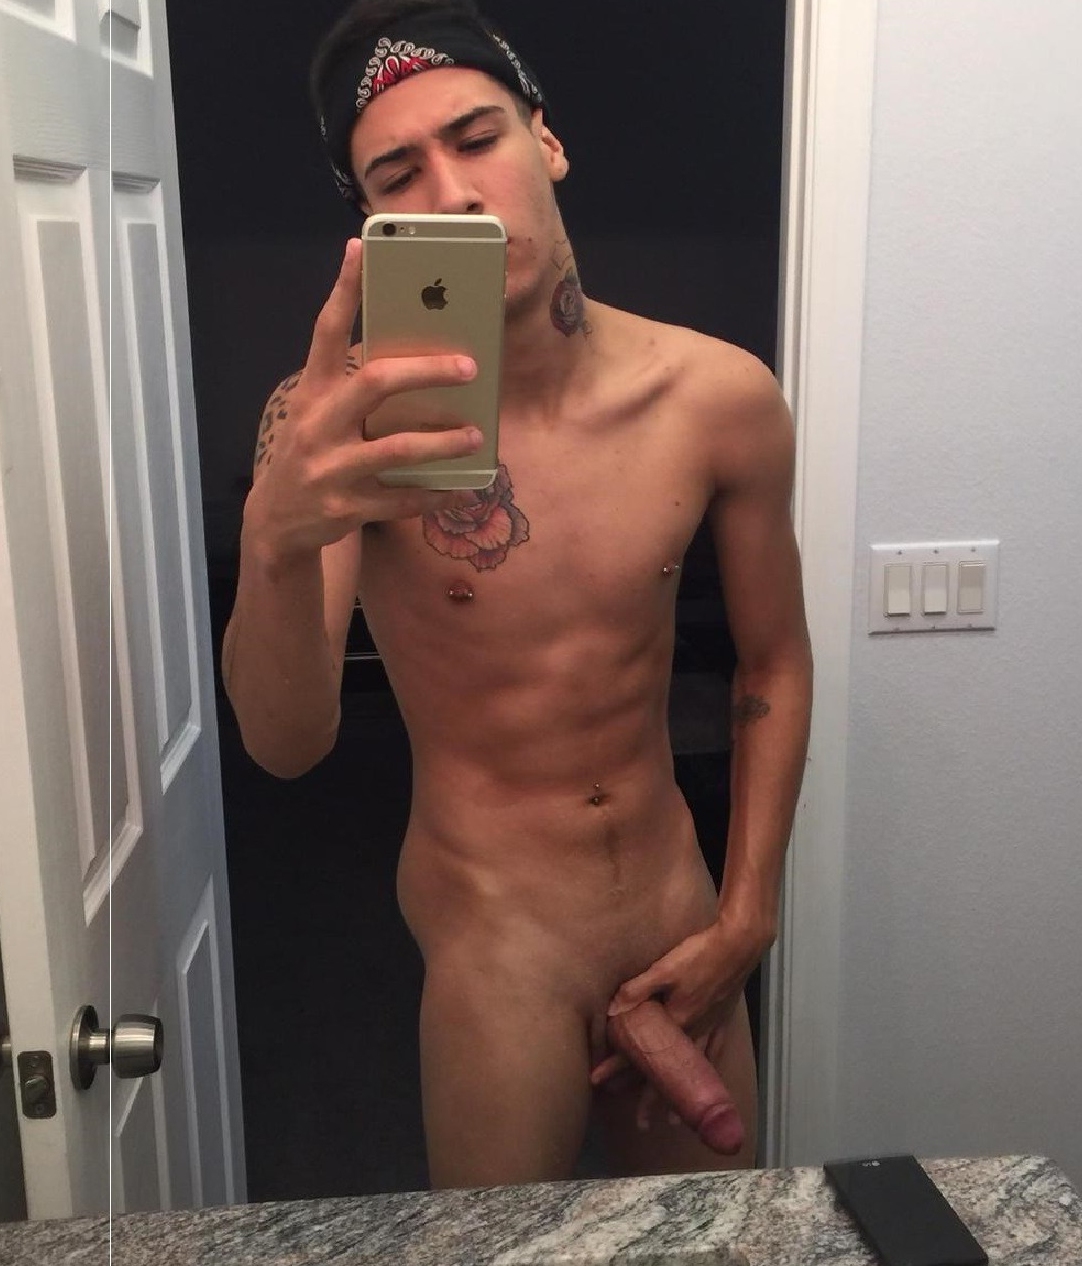 Hot guy takes nude selfie